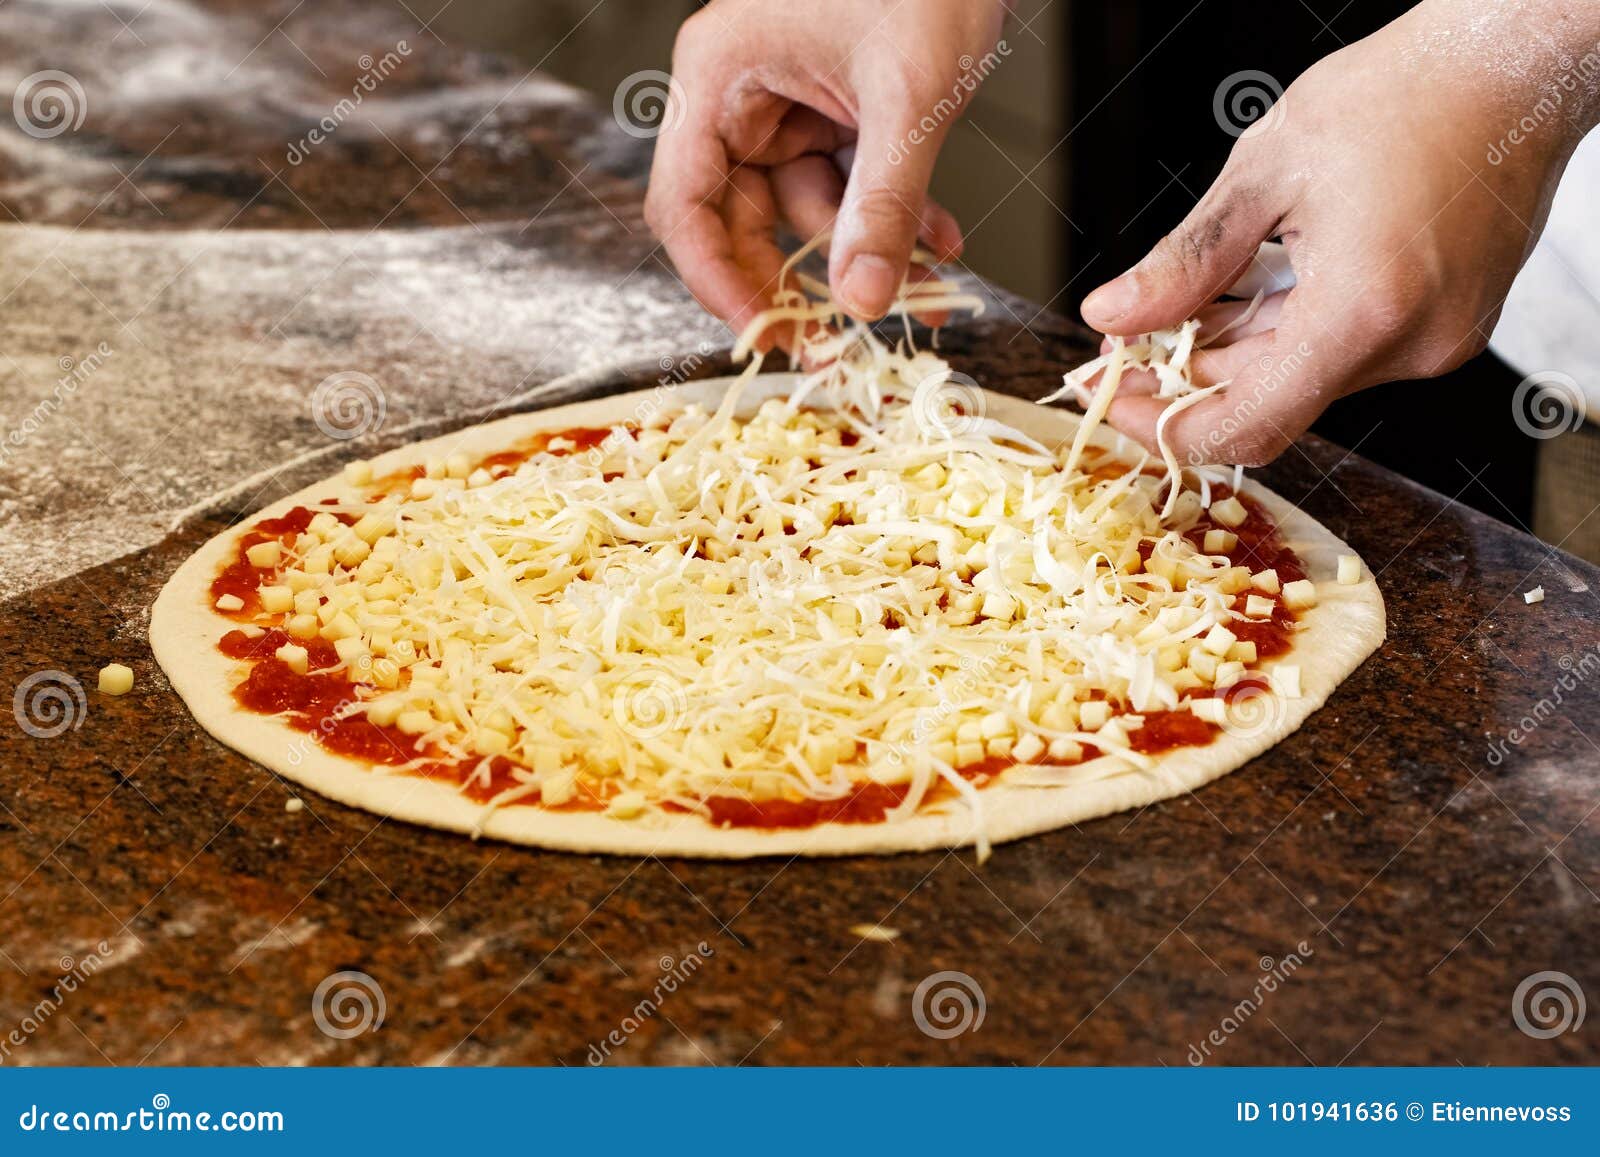 когда ложат сыр на пиццу в духовке (120) фото